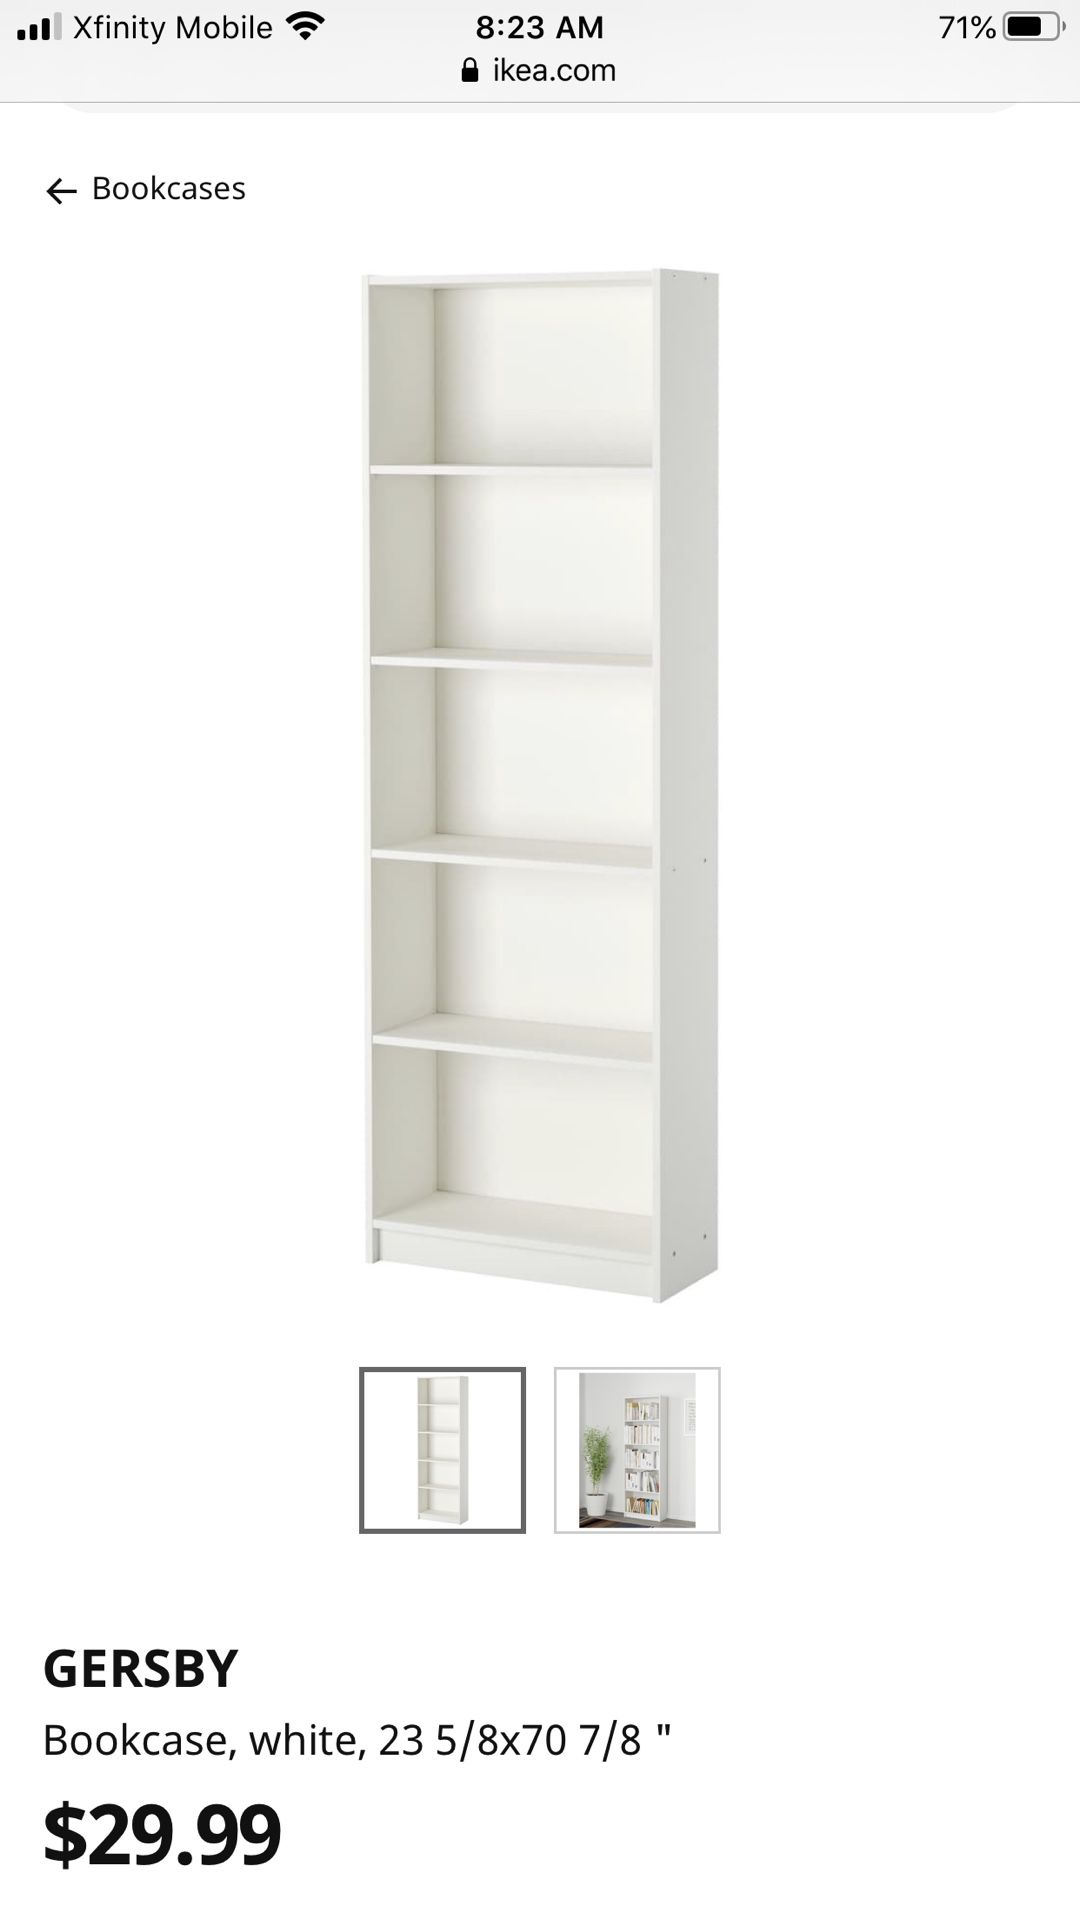 Two IKEA bookshelves